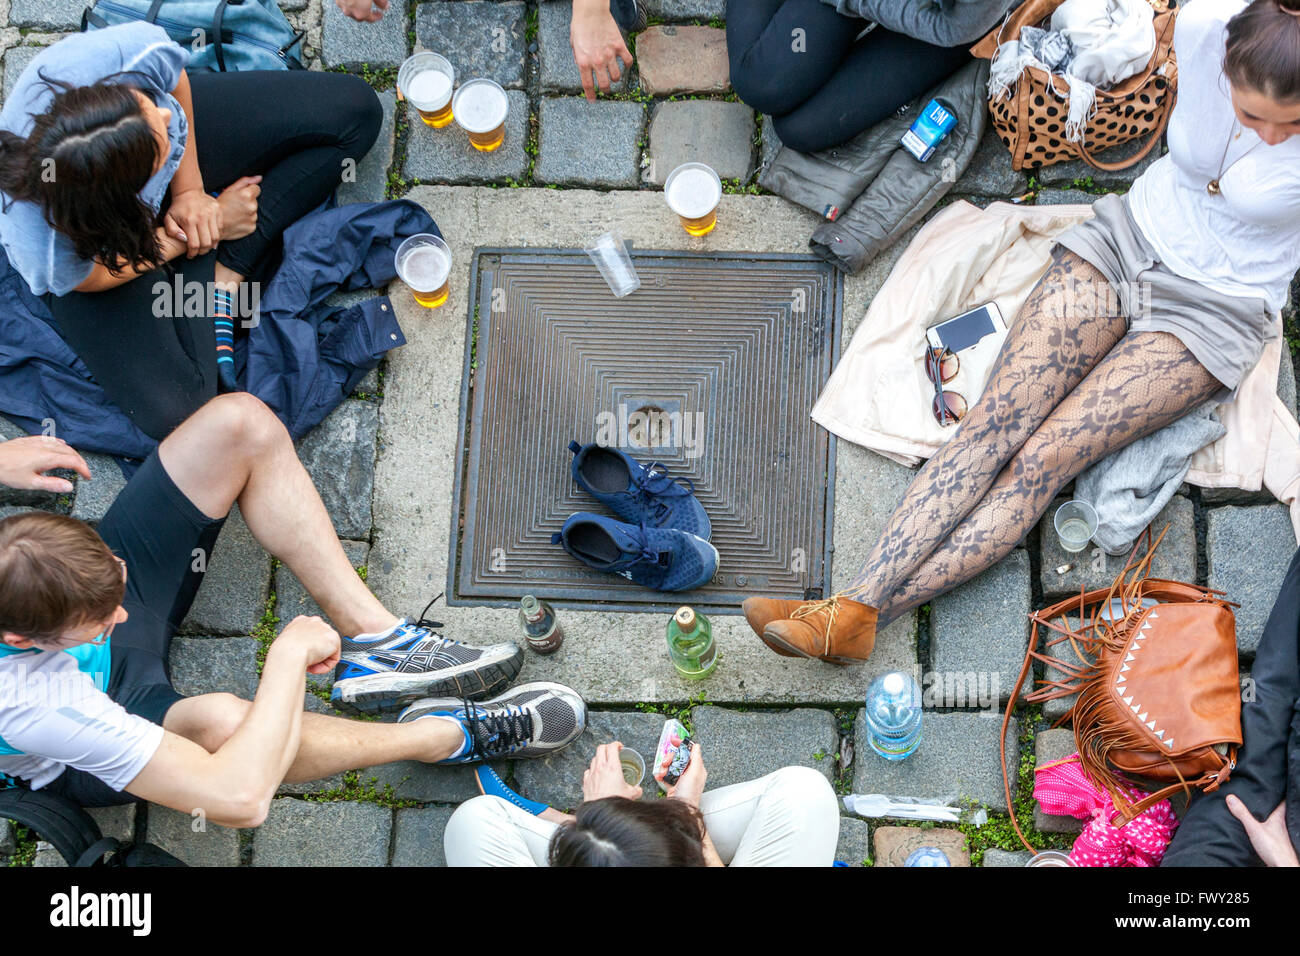 Giovani incontrare amici strada picnic partito Praga City lifestyle Repubblica Ceca agghiacciante fuori vista Foto Stock